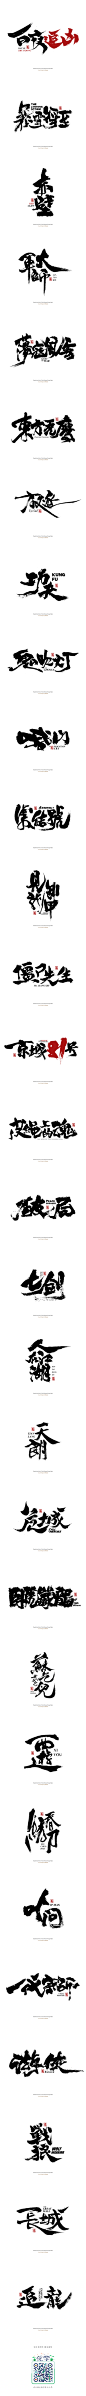 本默<电影系列>-字体传奇网-中国首个字体品牌设计师交流网